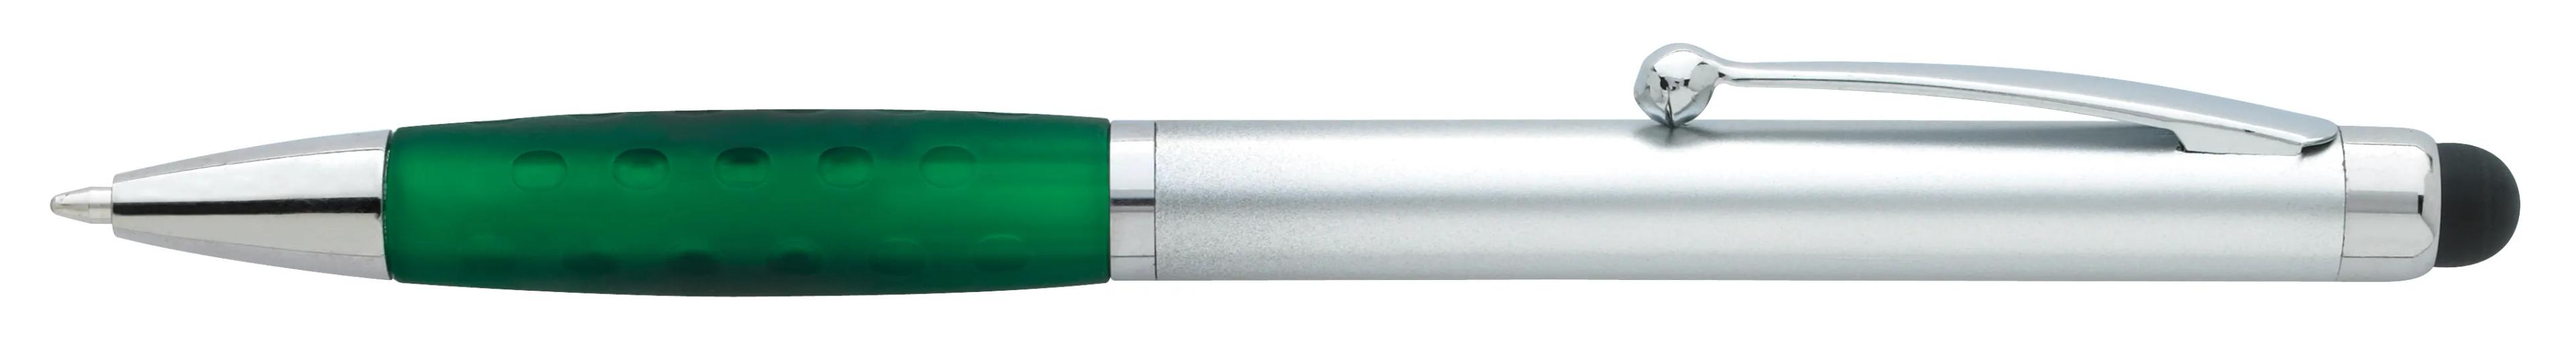 Silver Stylus Grip Pen 5 of 11